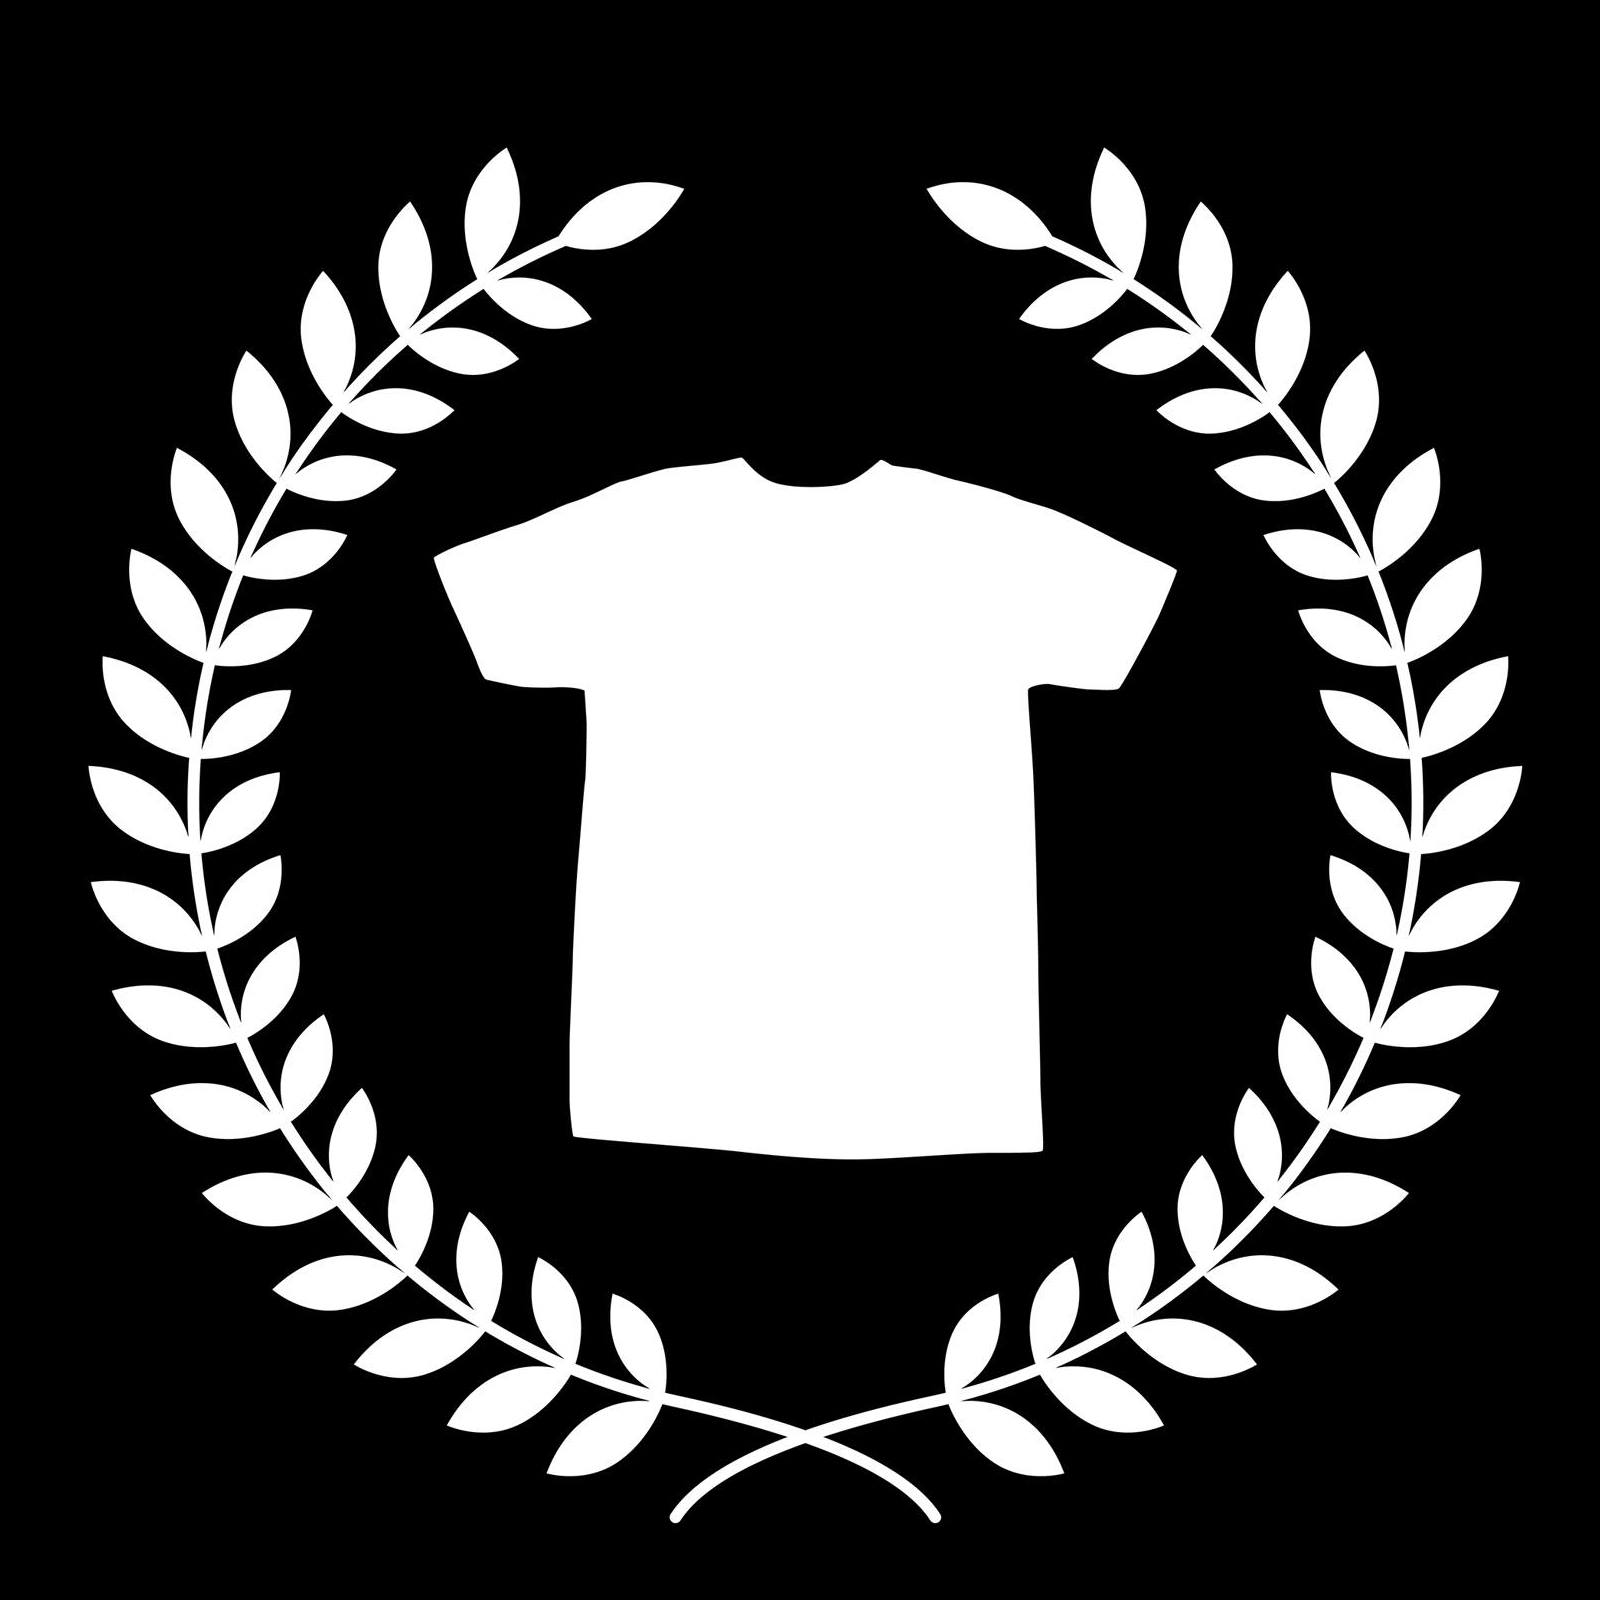 Company logo of TeePublic